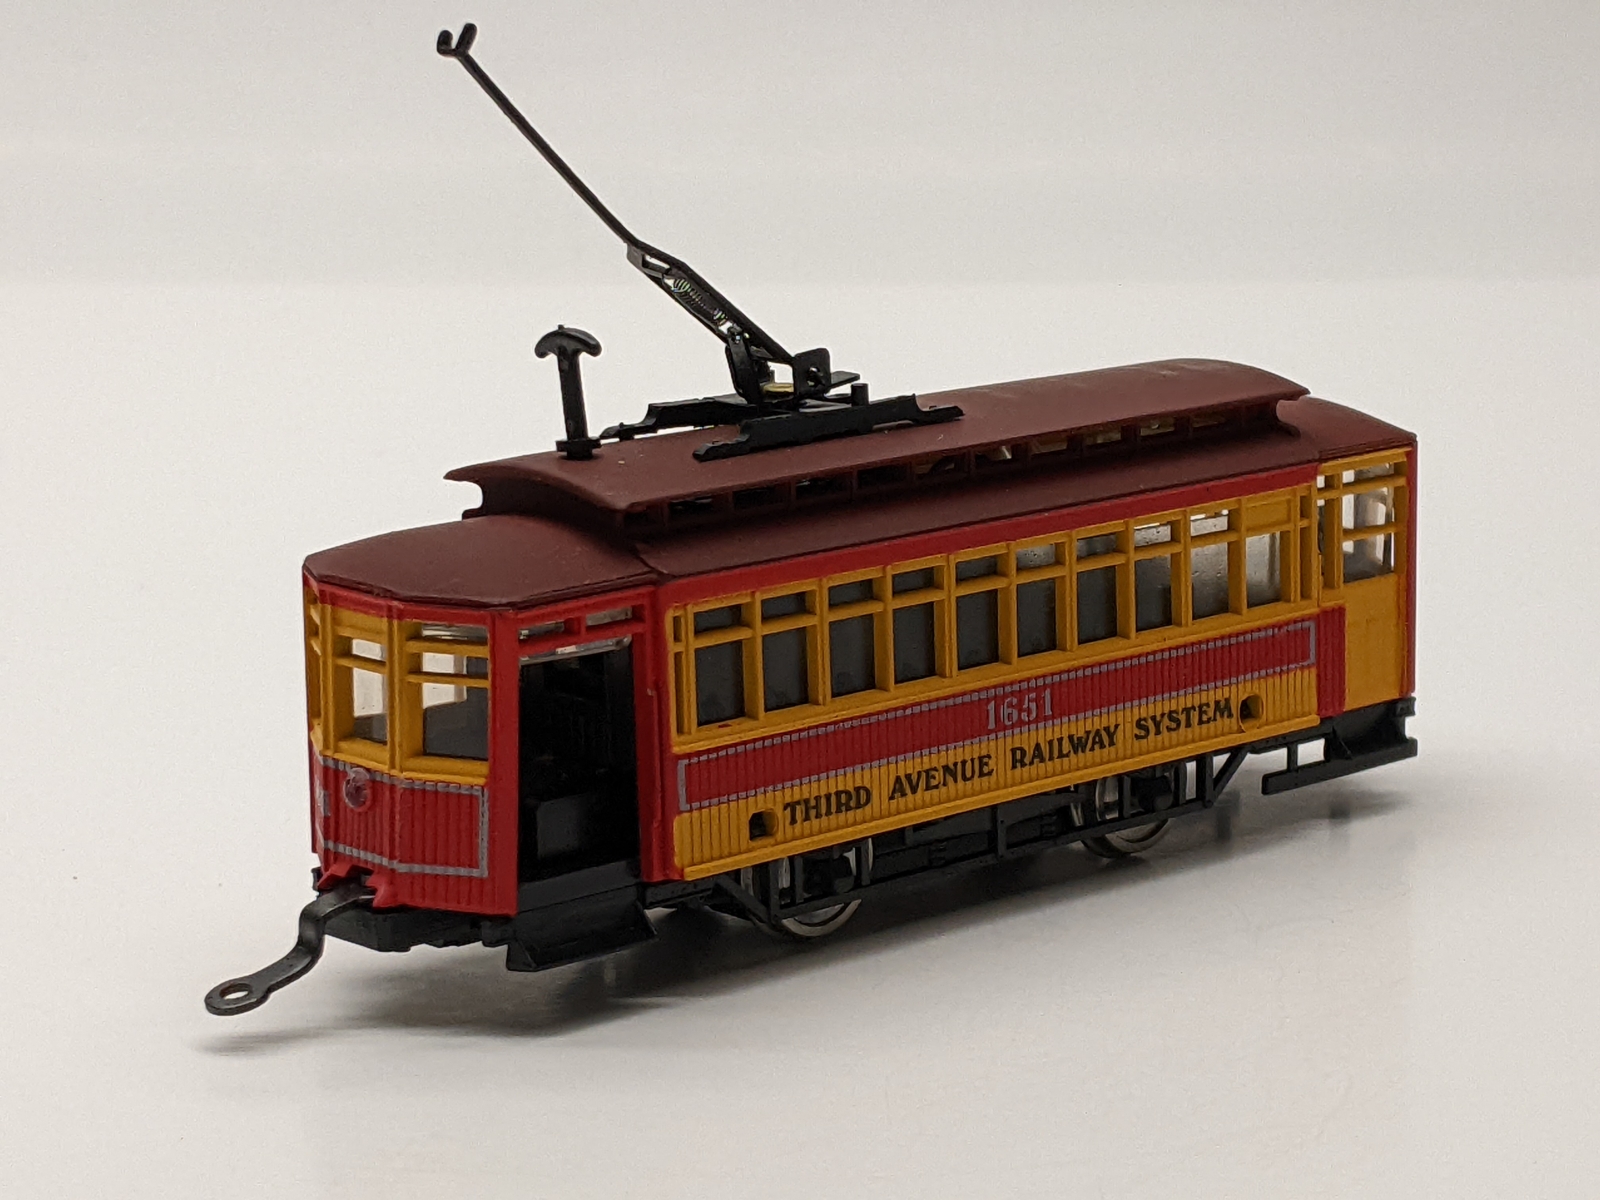 AHM 5301 HO Birney Trolley - Third Avenue Railway System #1651 For 